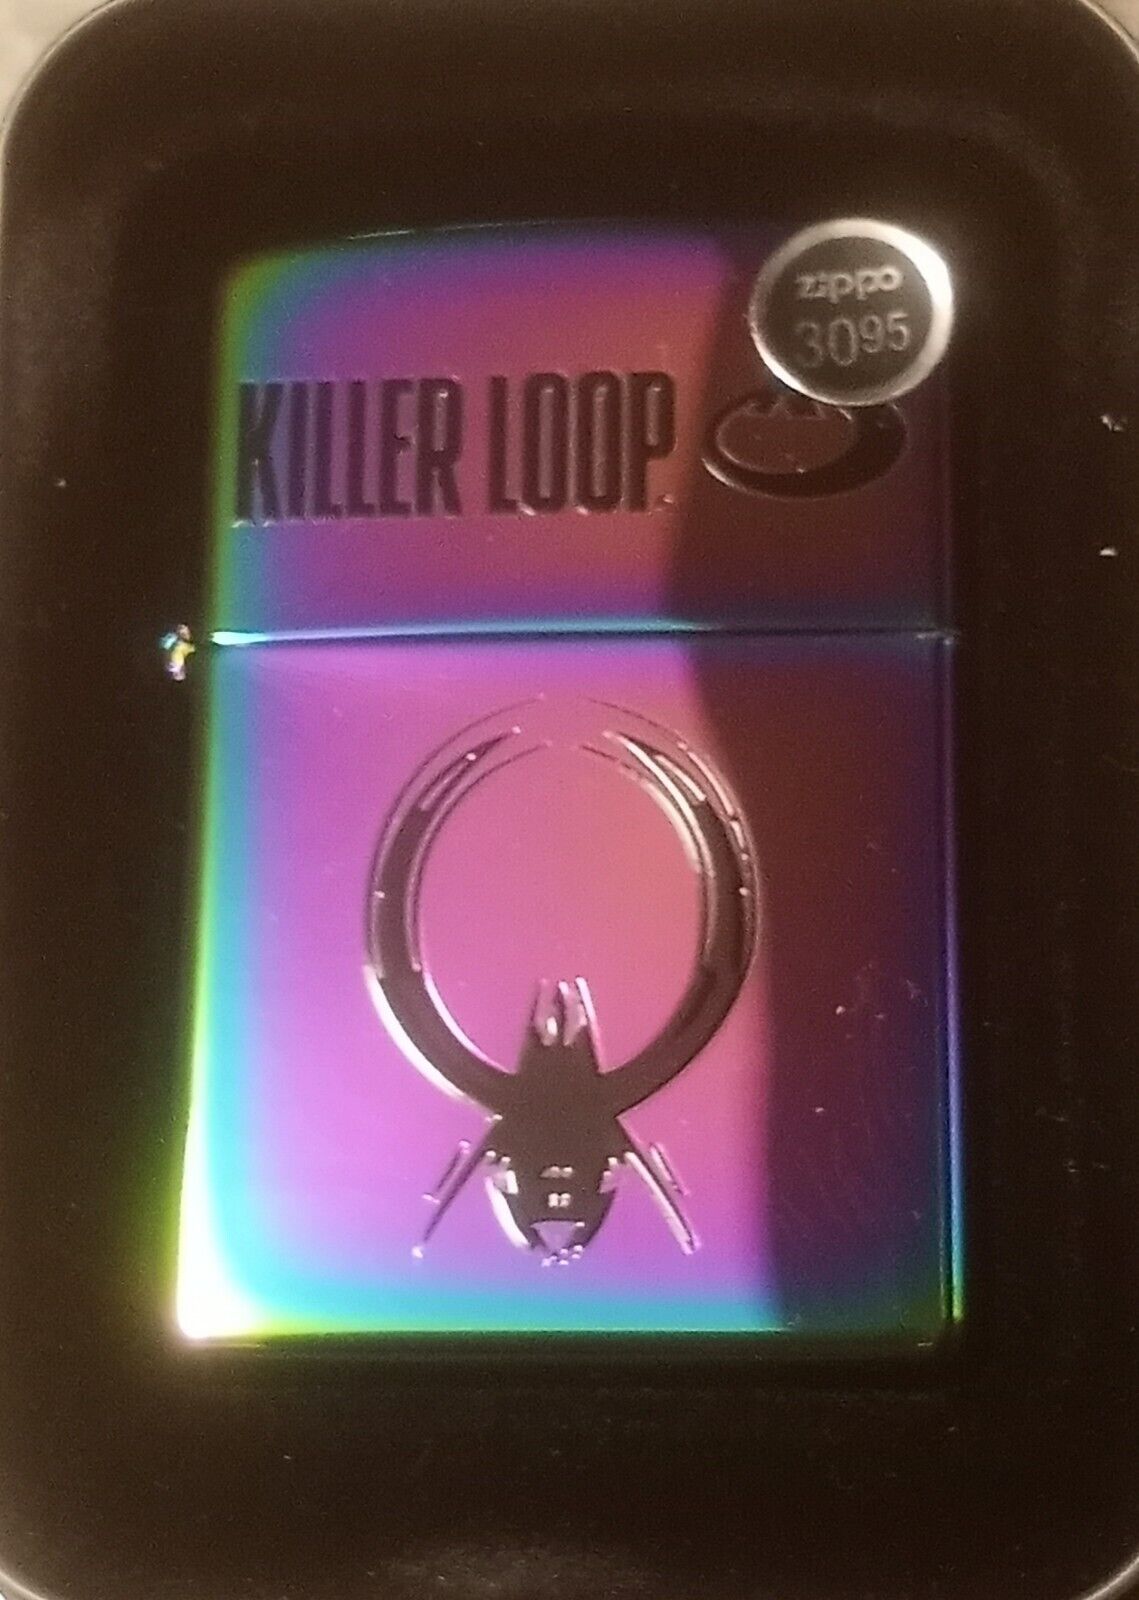 Zippo Killer Loop Spectrum Lighter Japan